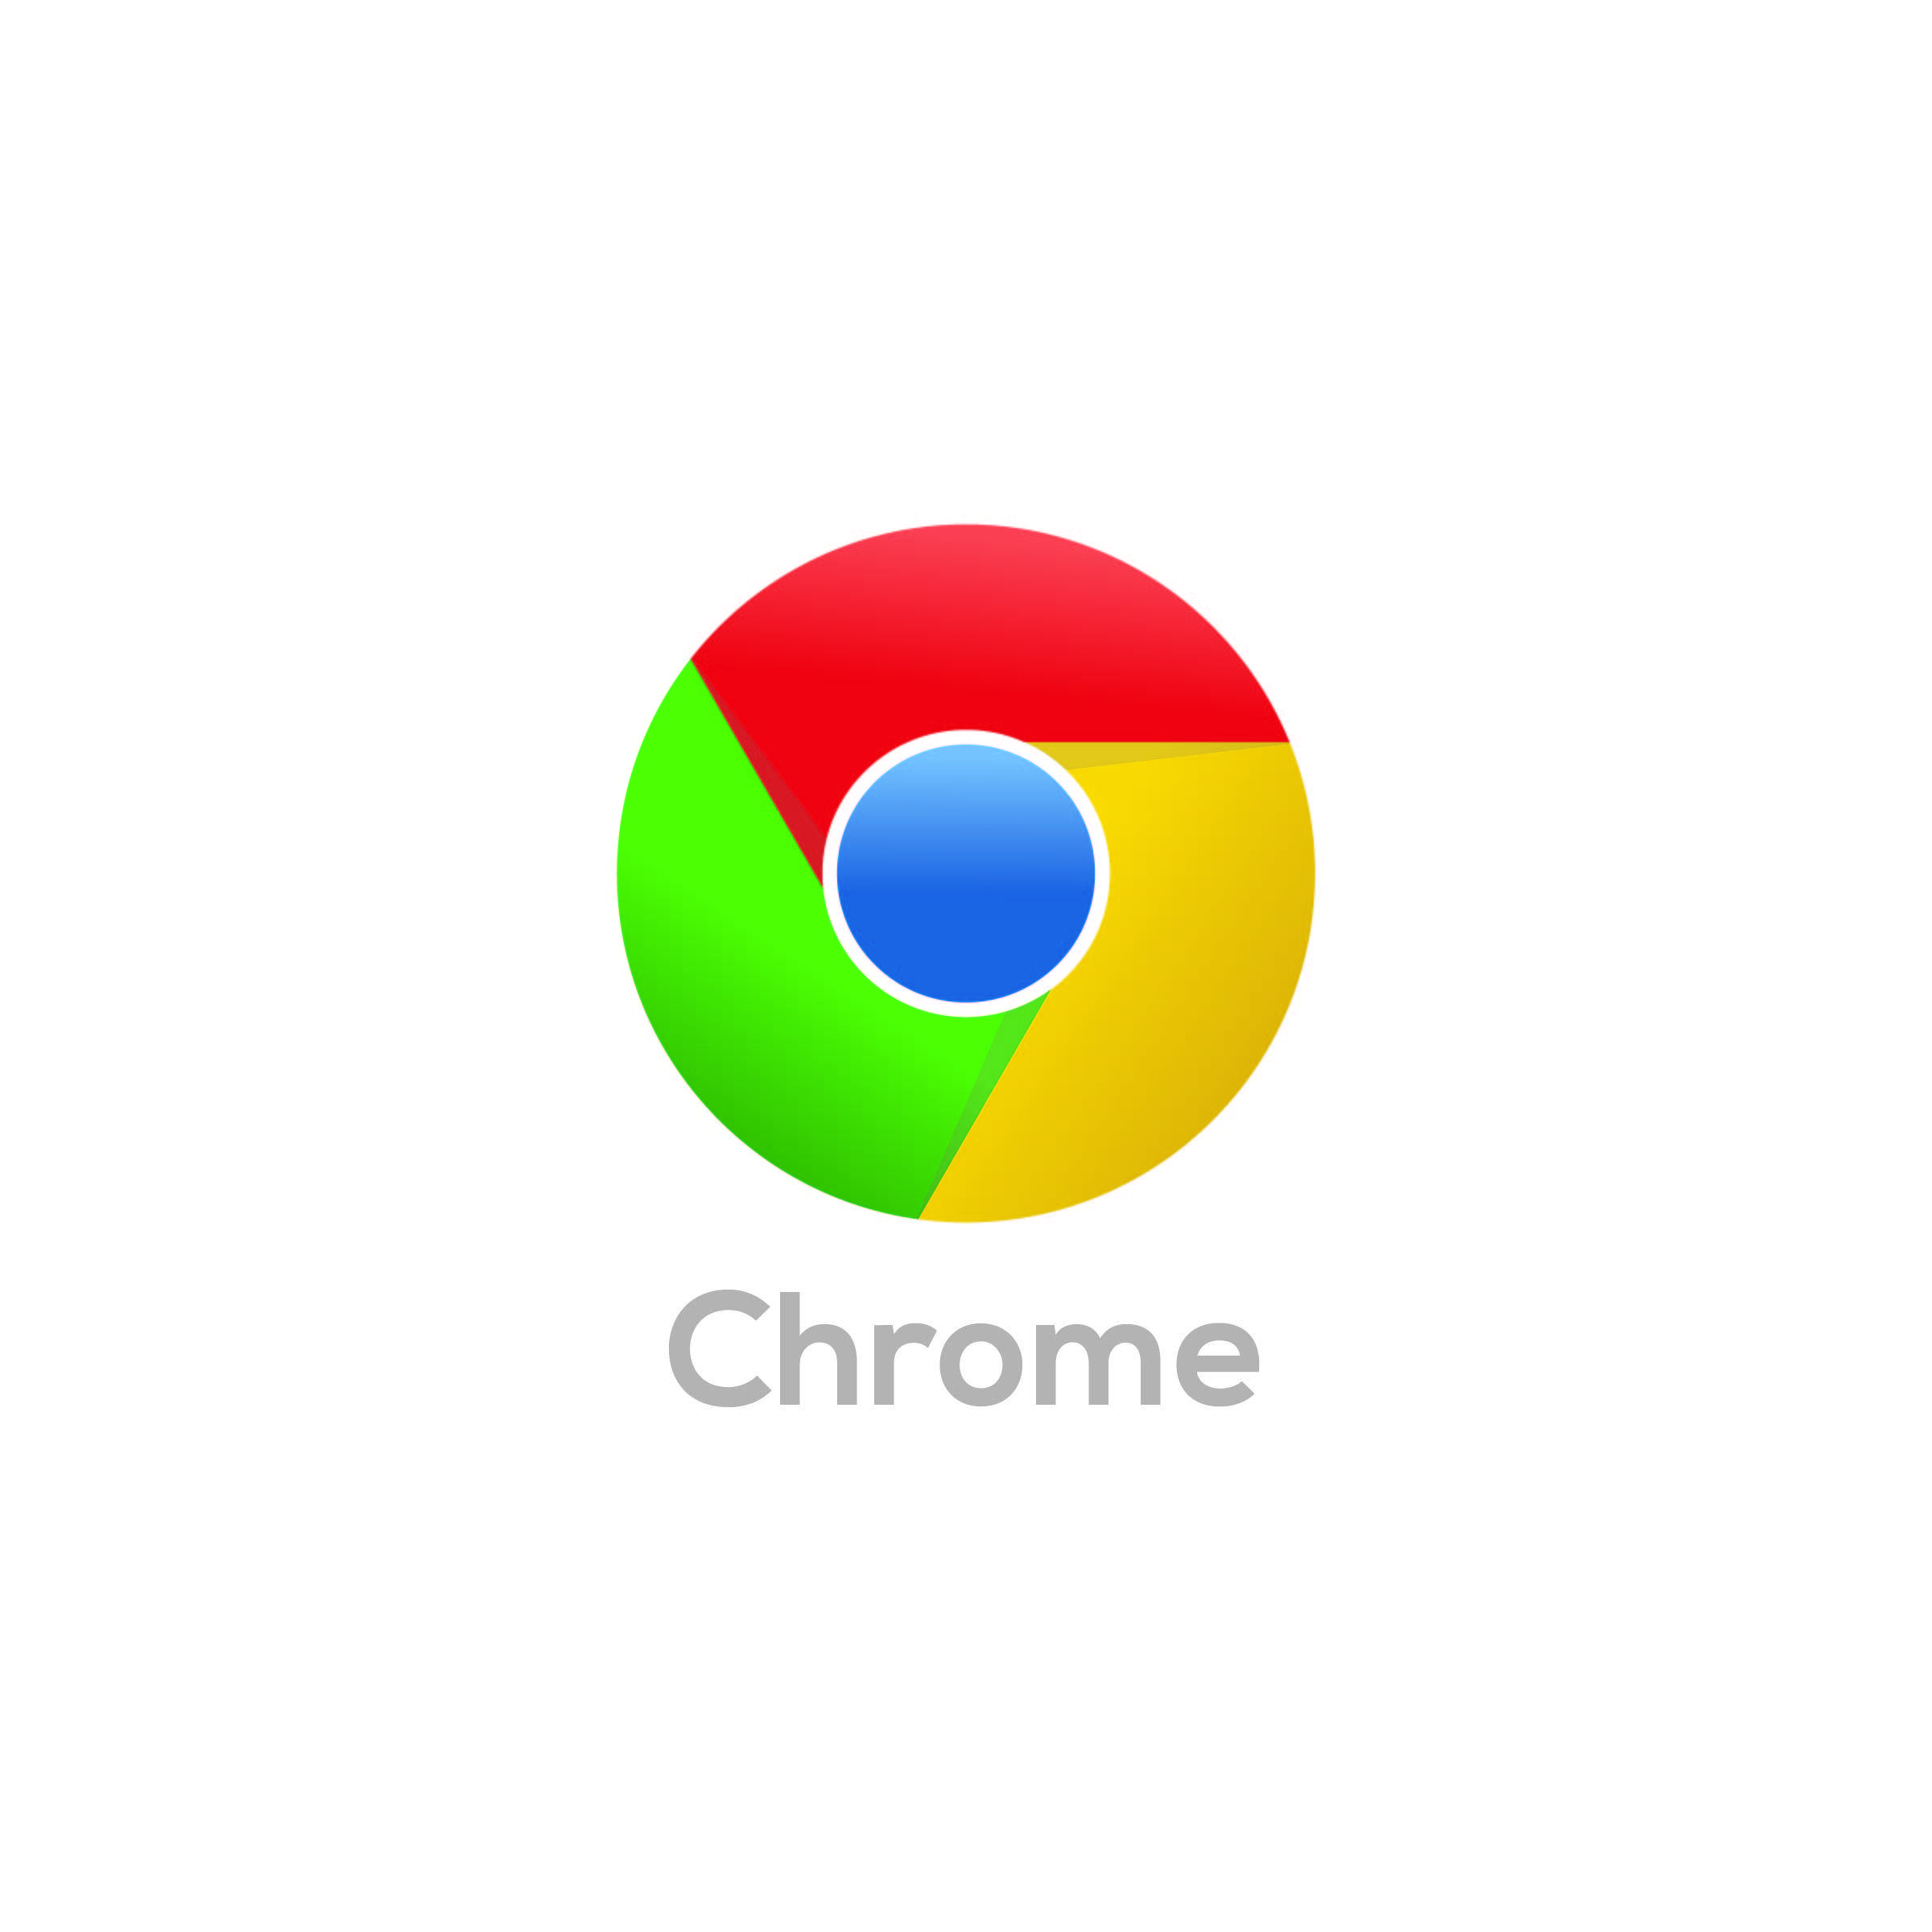 Chrome World Logo - Chrome logo